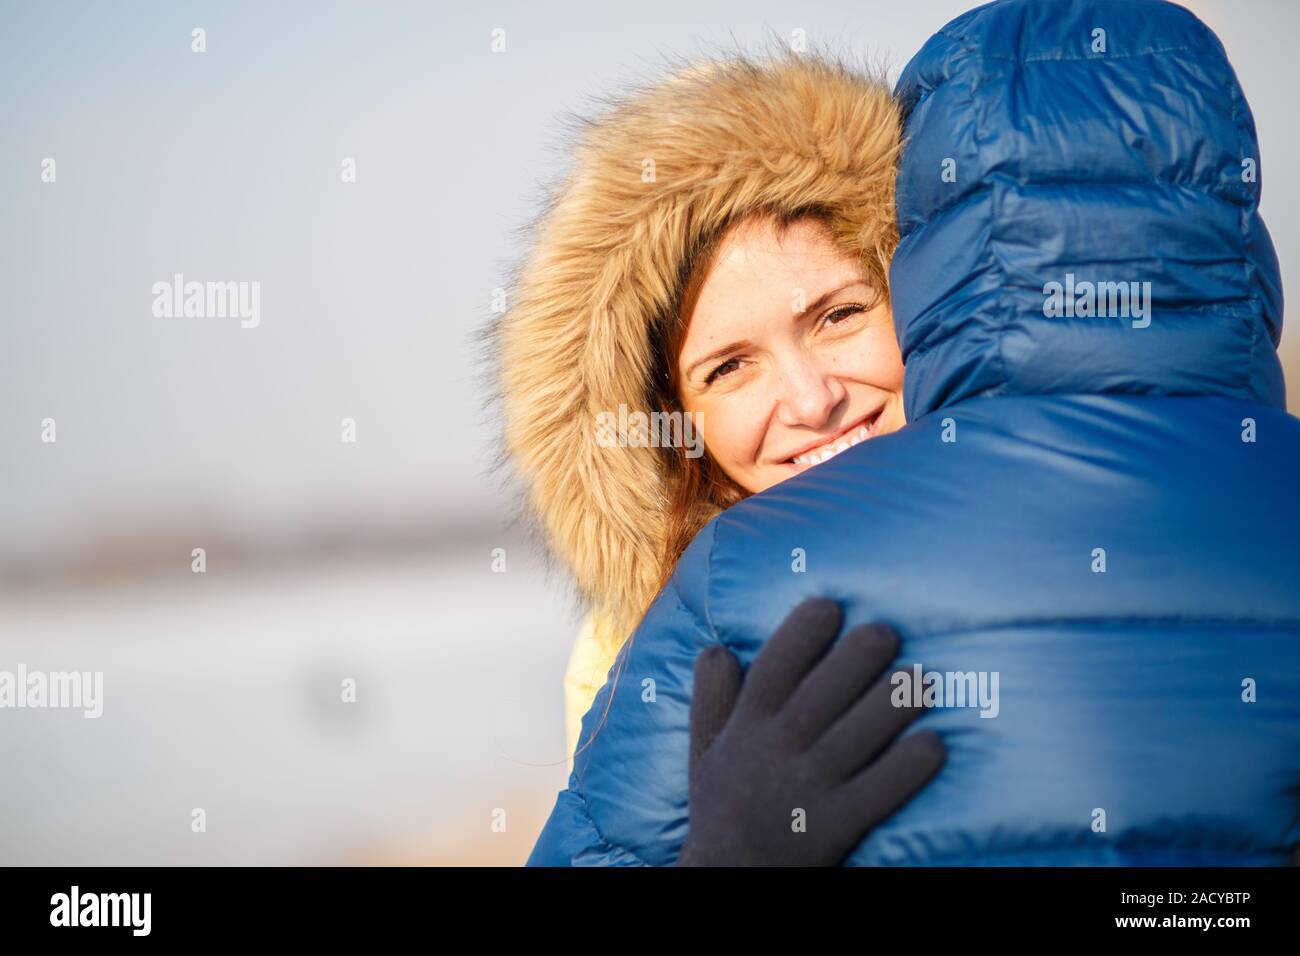 Felice coppia di maschio e femmina abbracciando ain inverno all'aperto Foto Stock